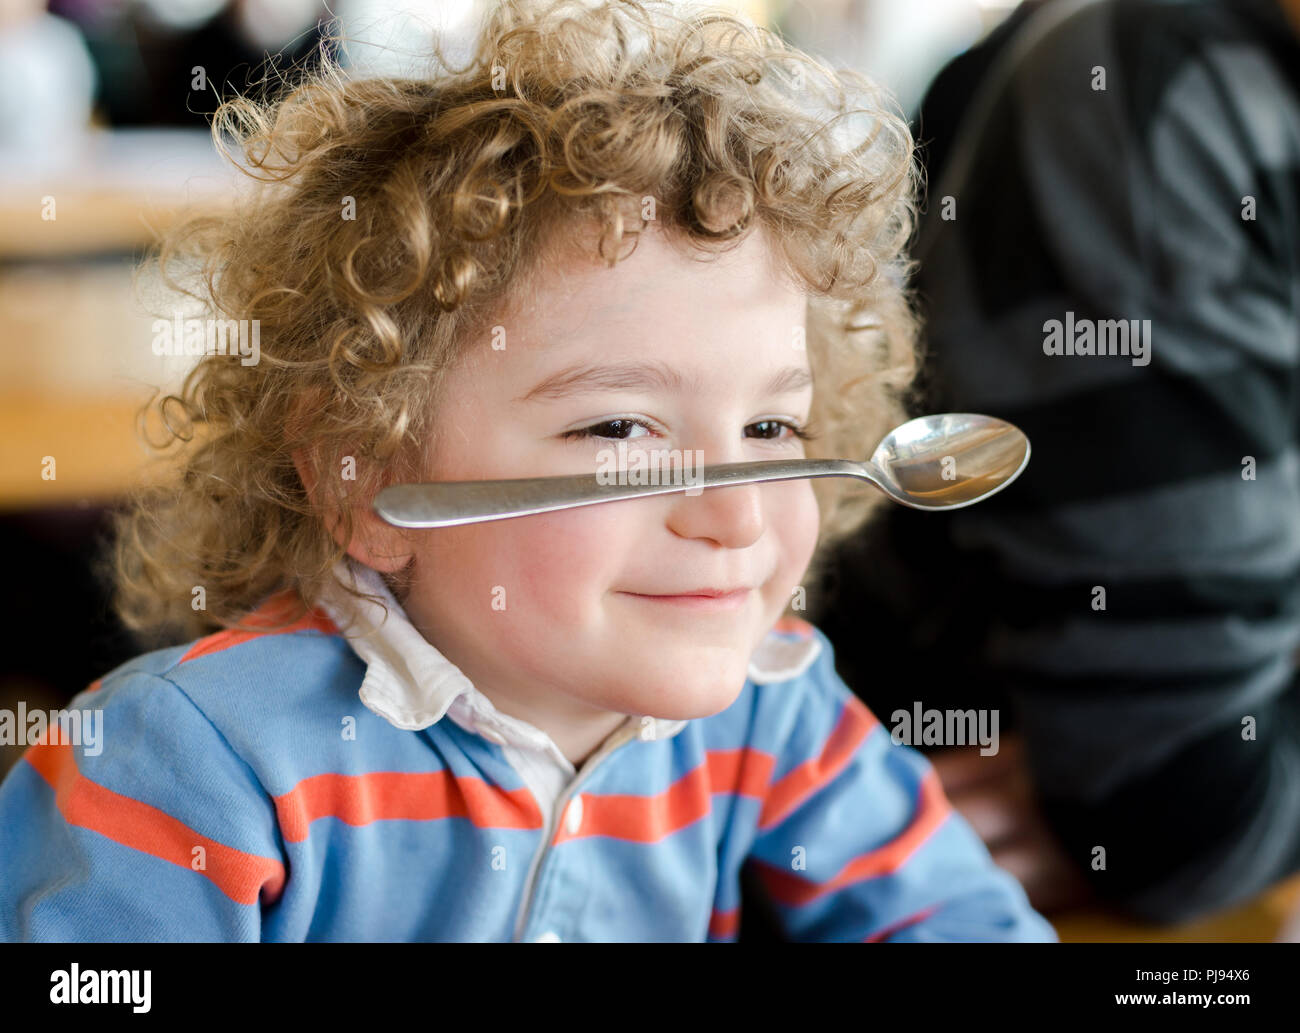 Ragazzo giovane sorride come egli saldi un cucchiaio sul suo naso come un partito trucco Foto Stock